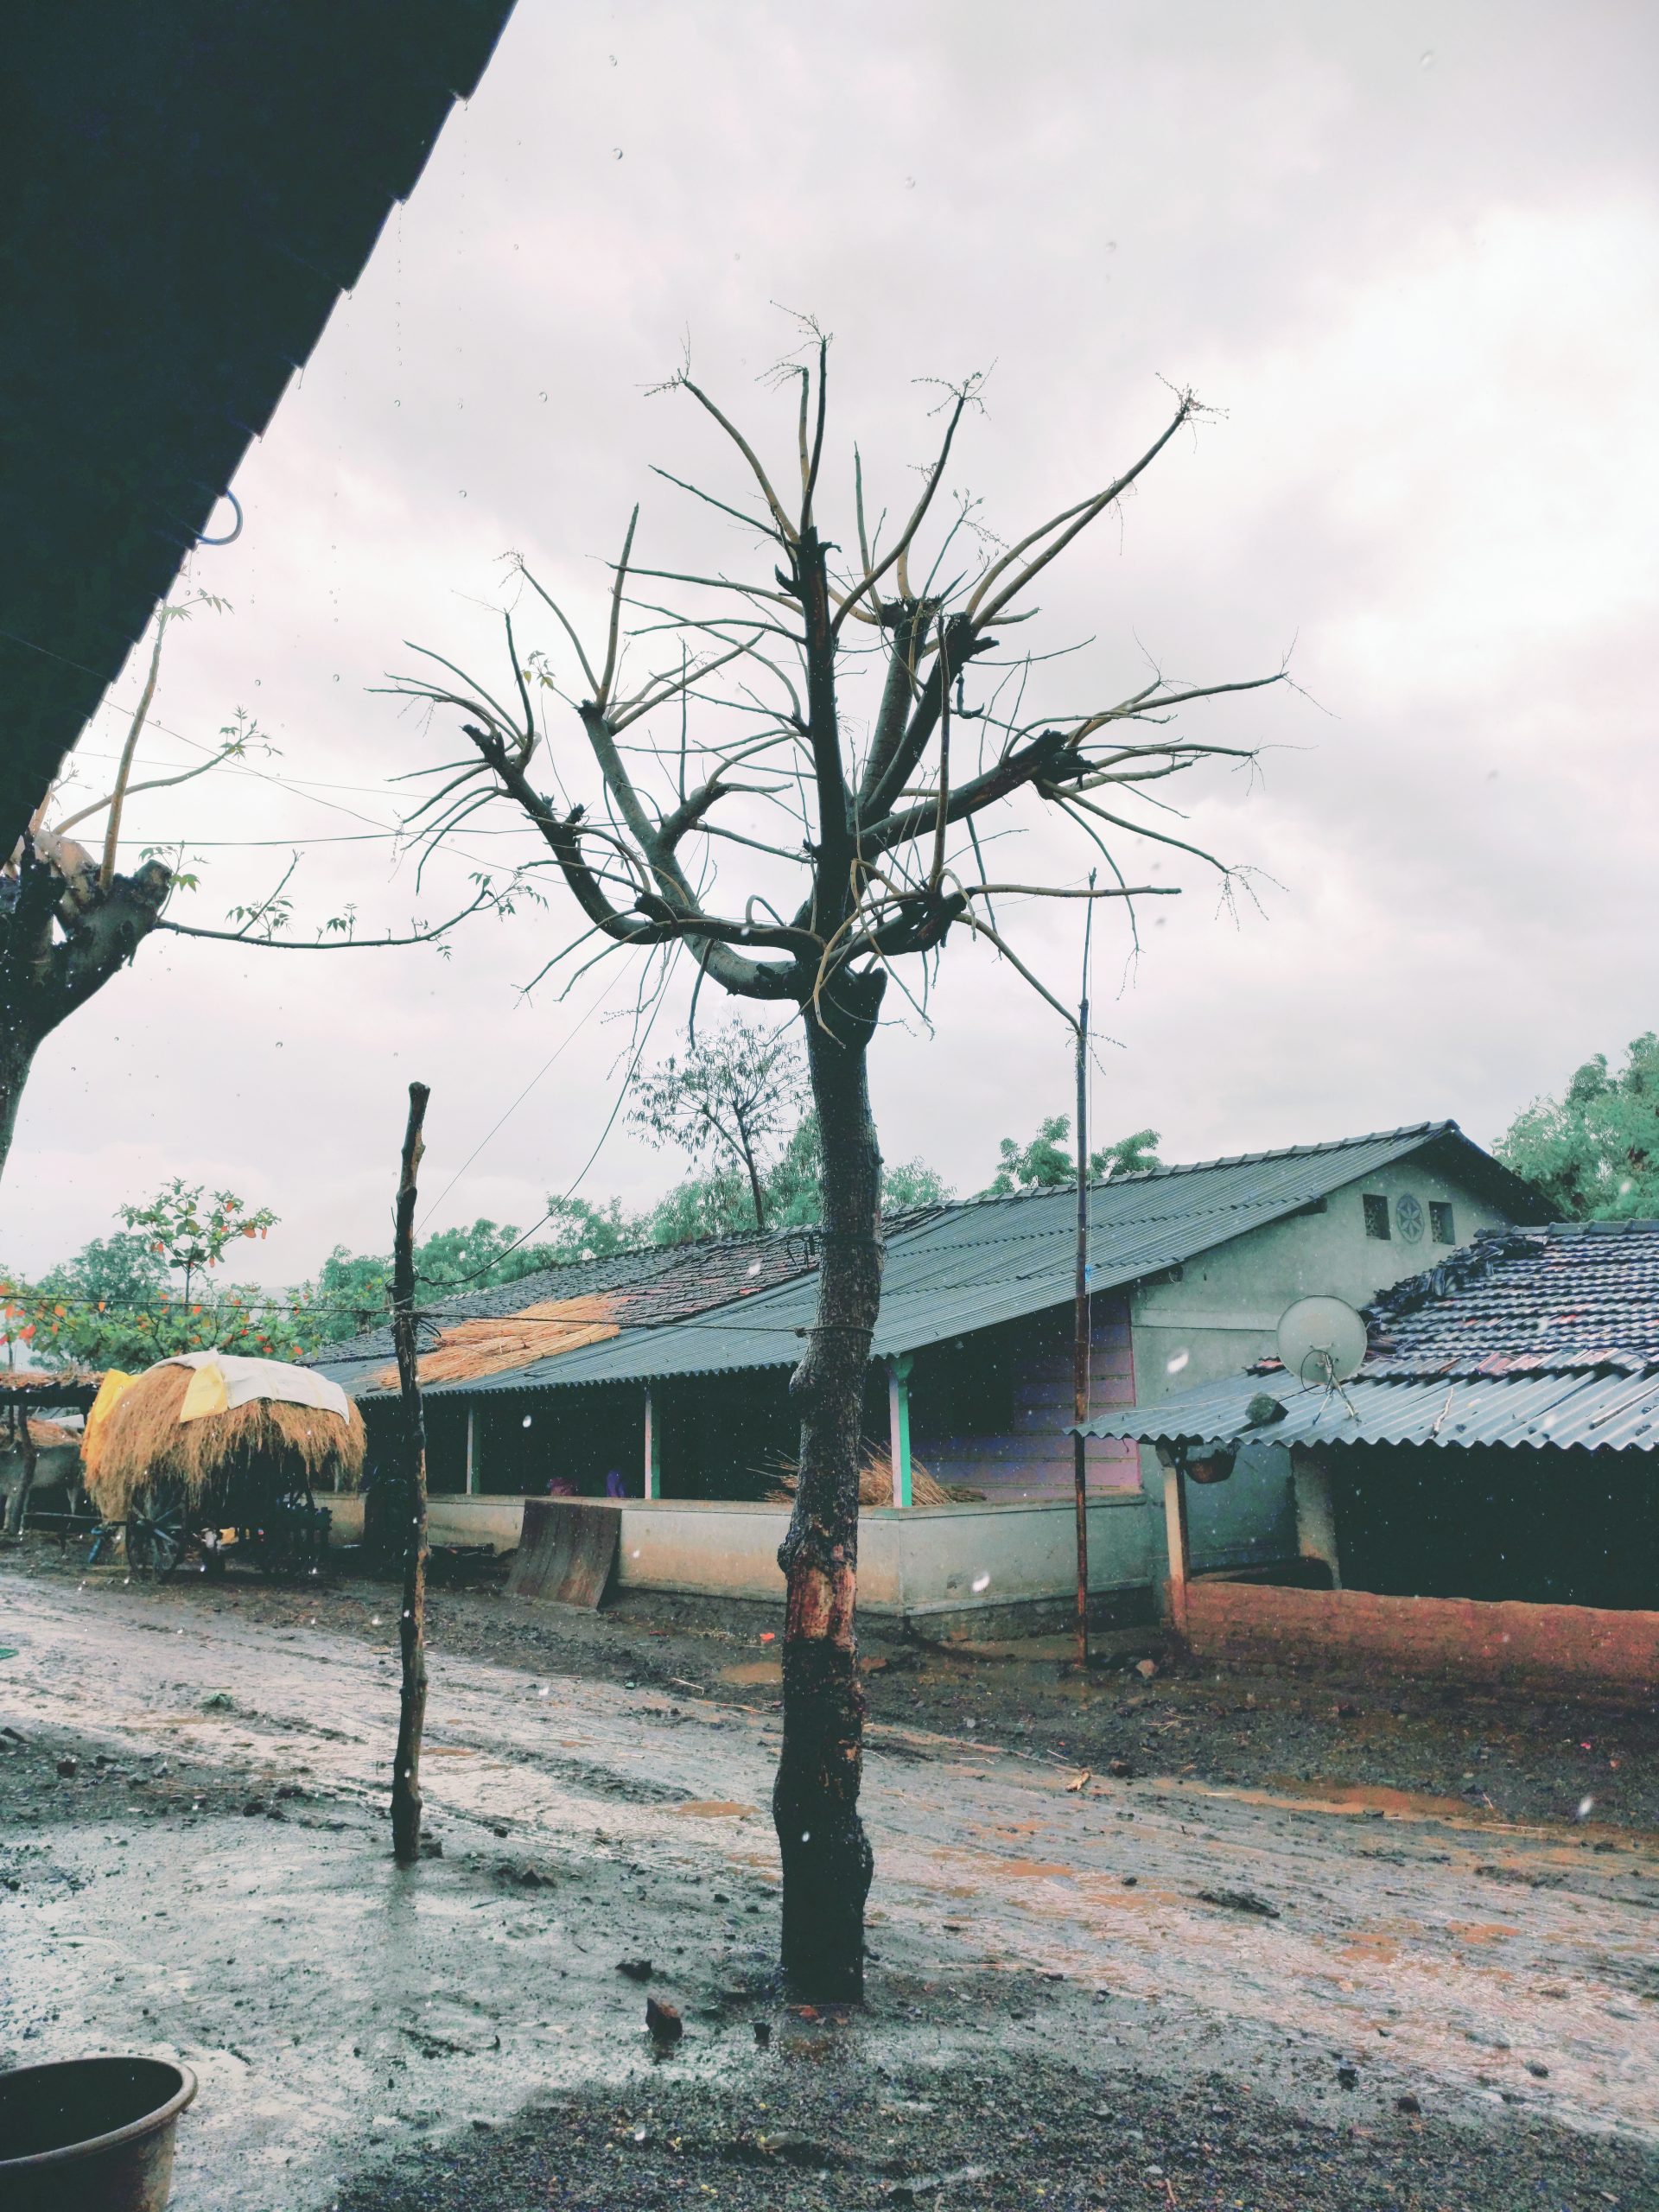 Tree in rainy season